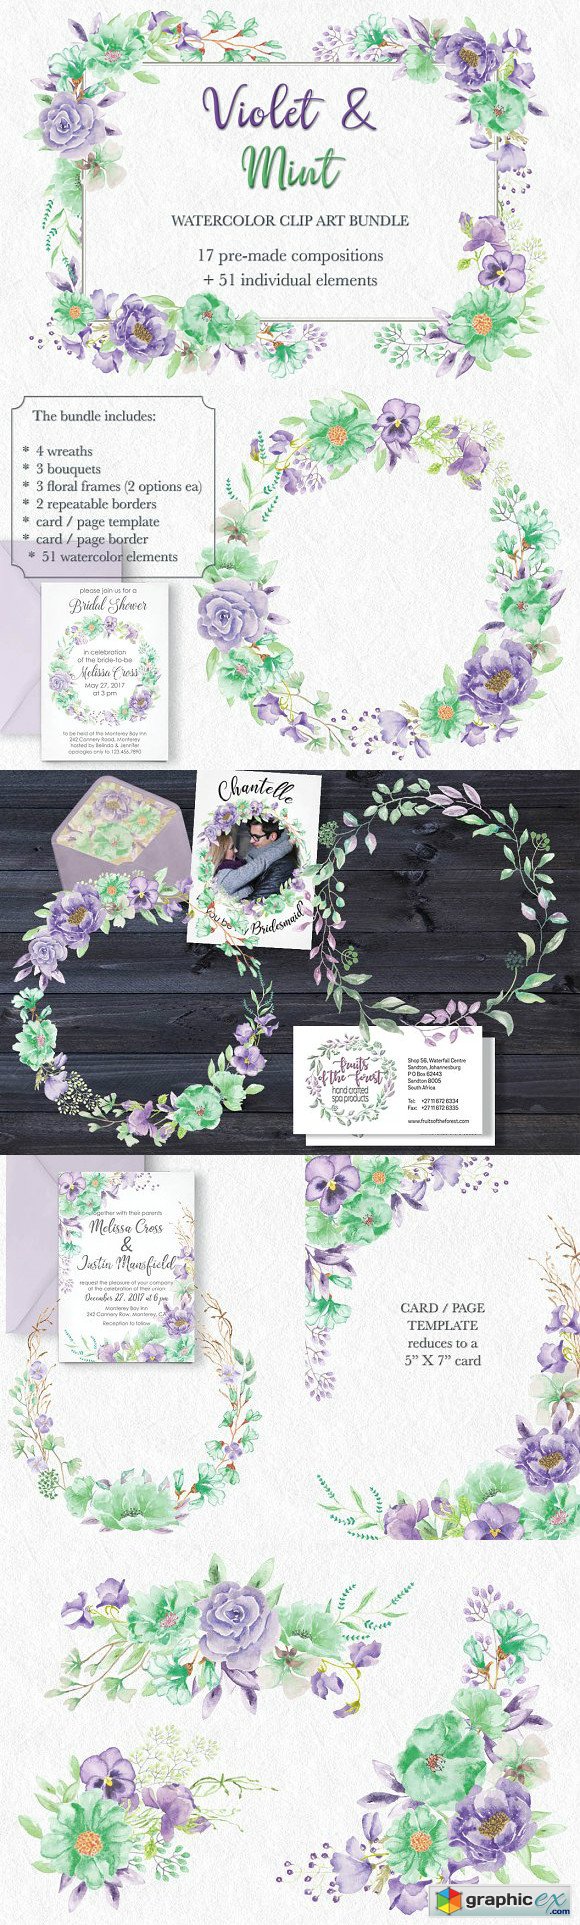 'Violet & Mint' watercolor bundle